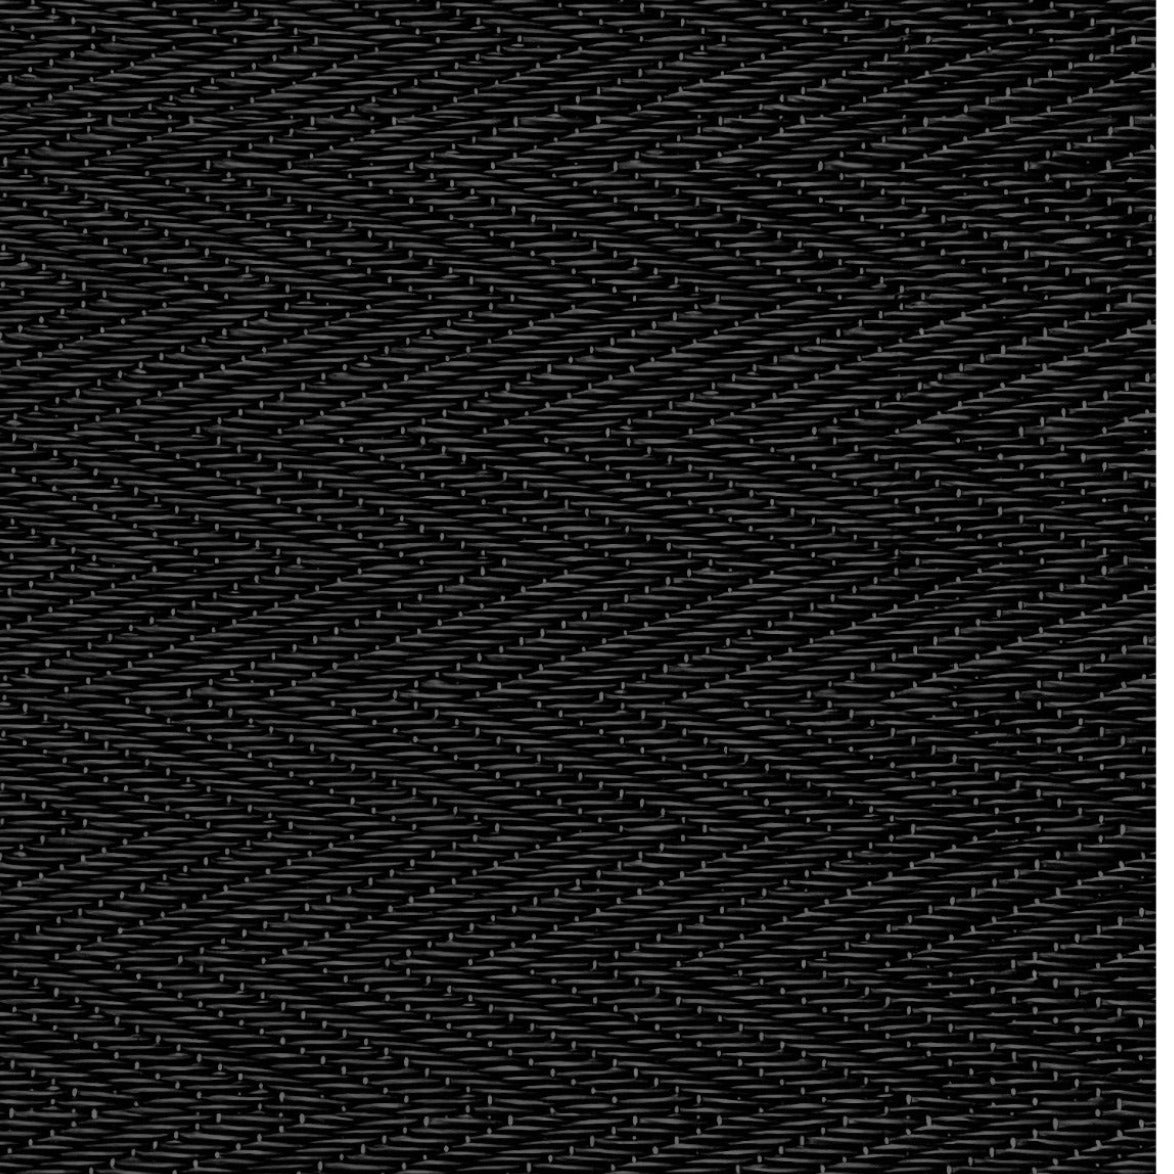 Plastiktæppe i sildebensvævet mønster i Sort 90x180 cm I Gronlykke.com